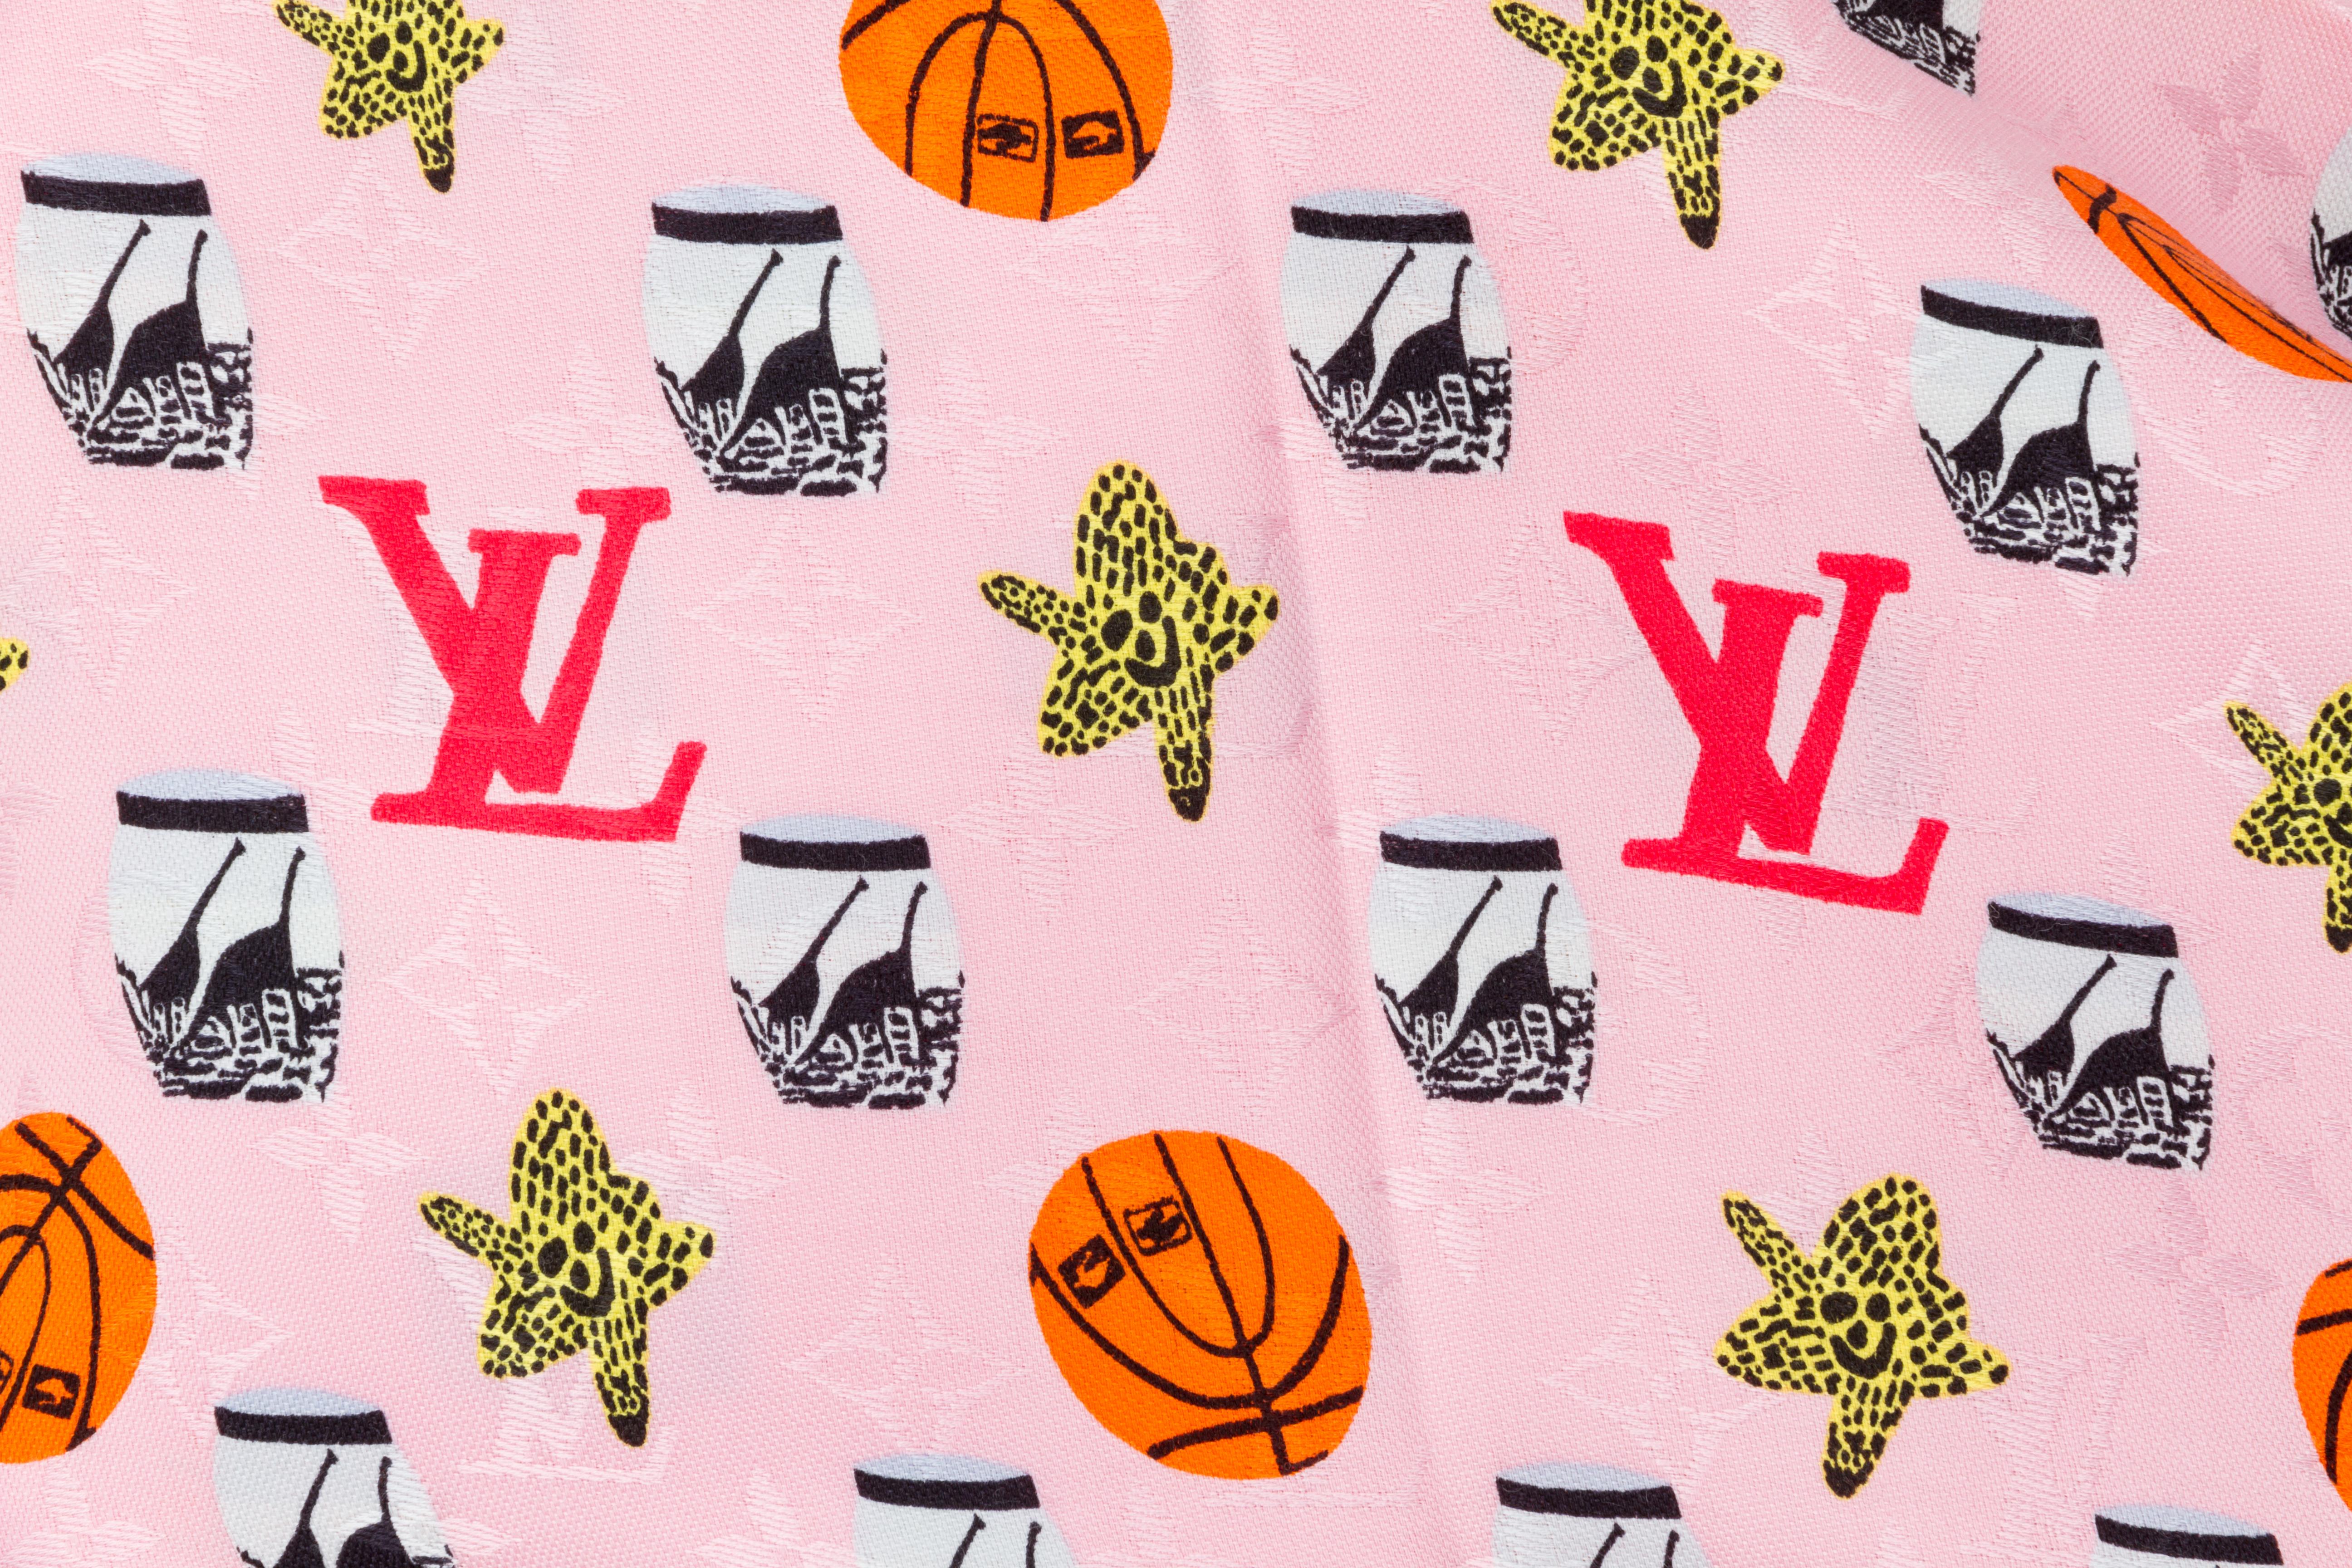 Châle en soie et laine rose surdimensionné Louis Vuitton, édition limitée, avec motifs de ballons de basket et logos. Tissage jacquard. Finition en frange. 
60% soie, 40% laine